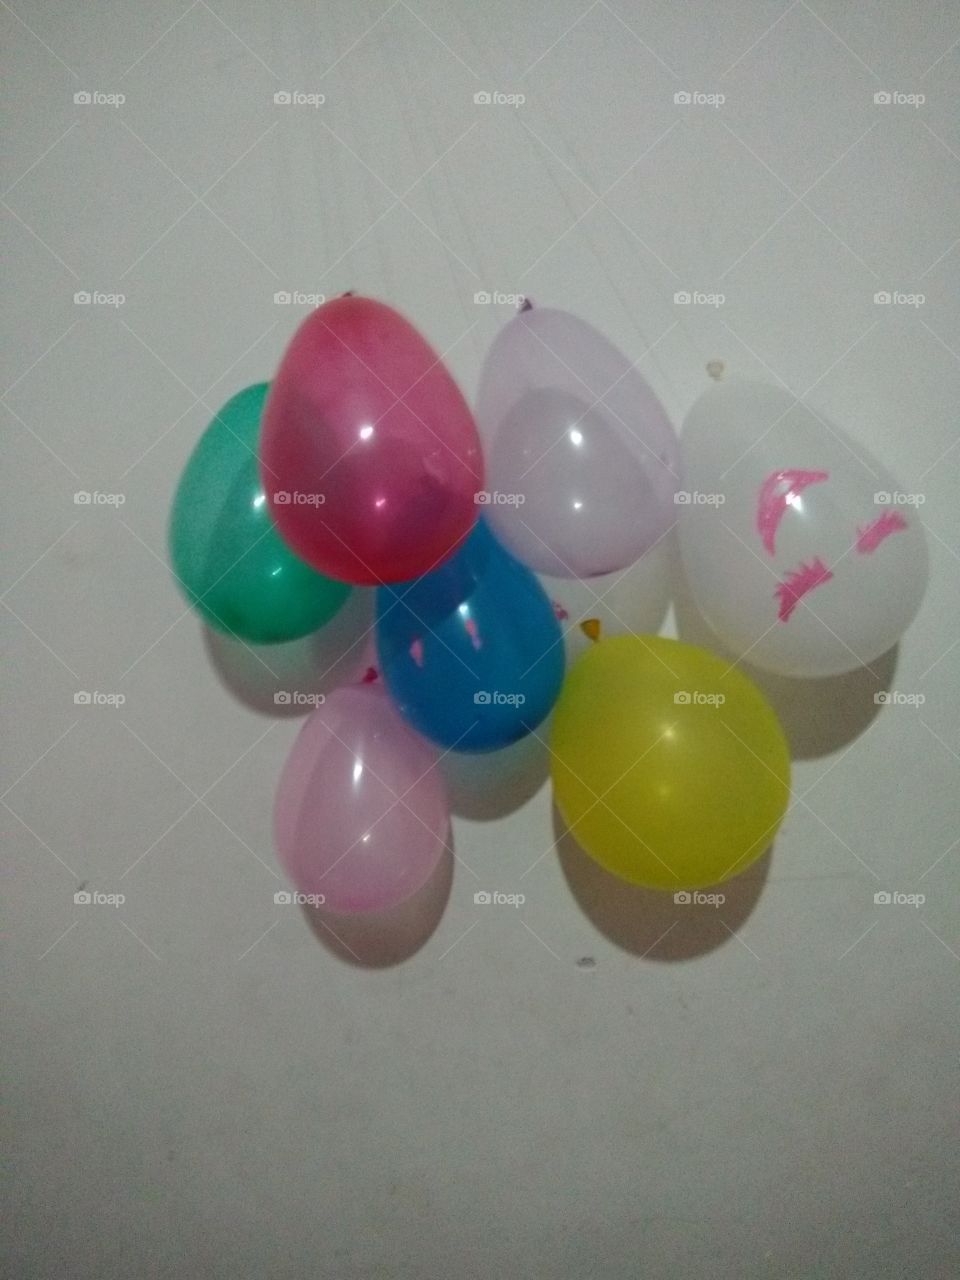 A balloon family